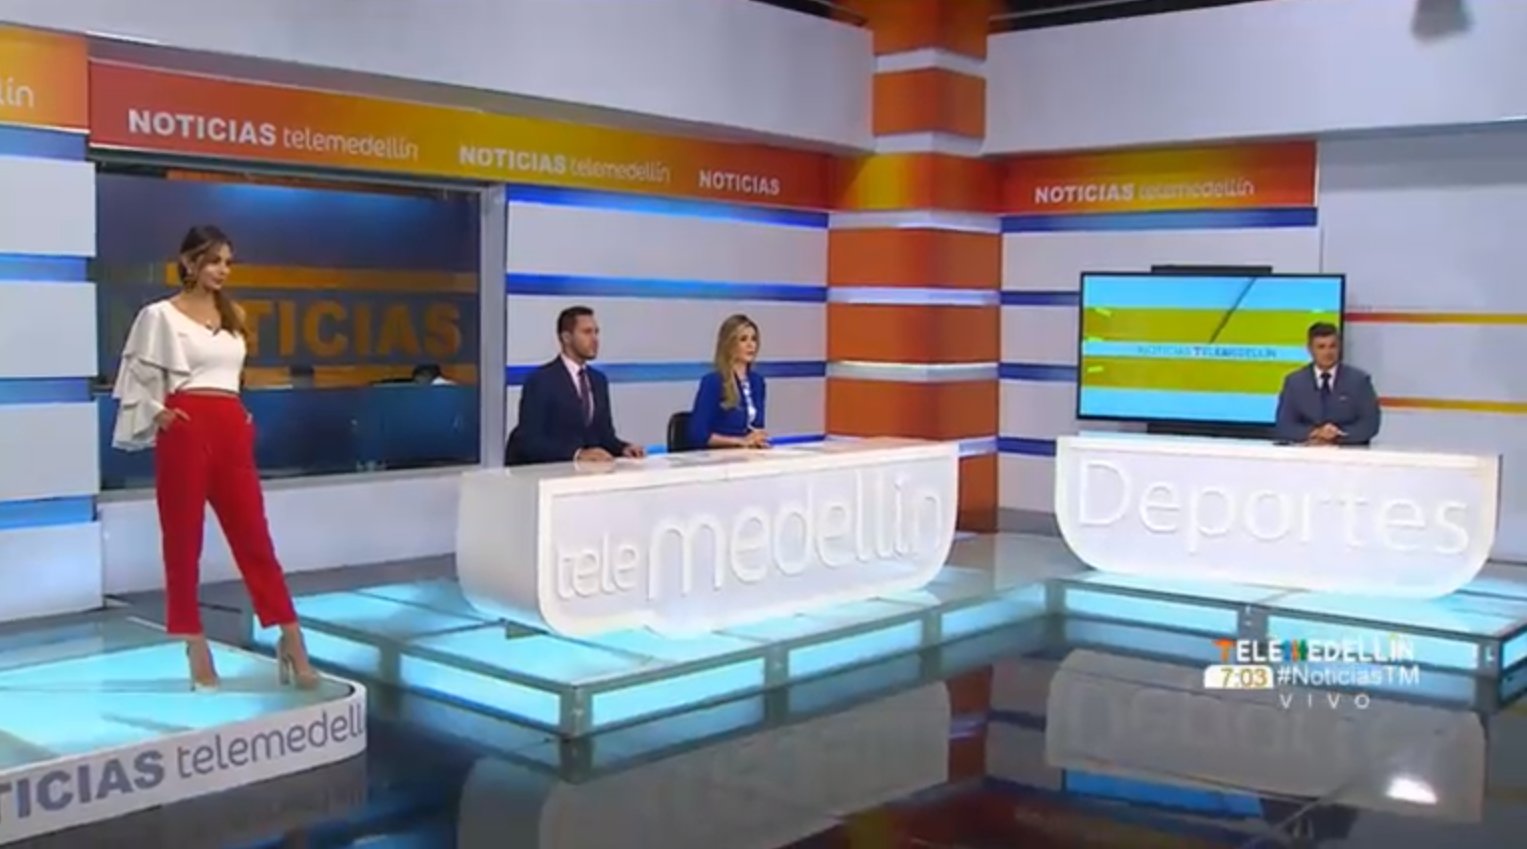 Noticias Telemedellín 20 de febrero del 2020 emisión 7:00 p.m.